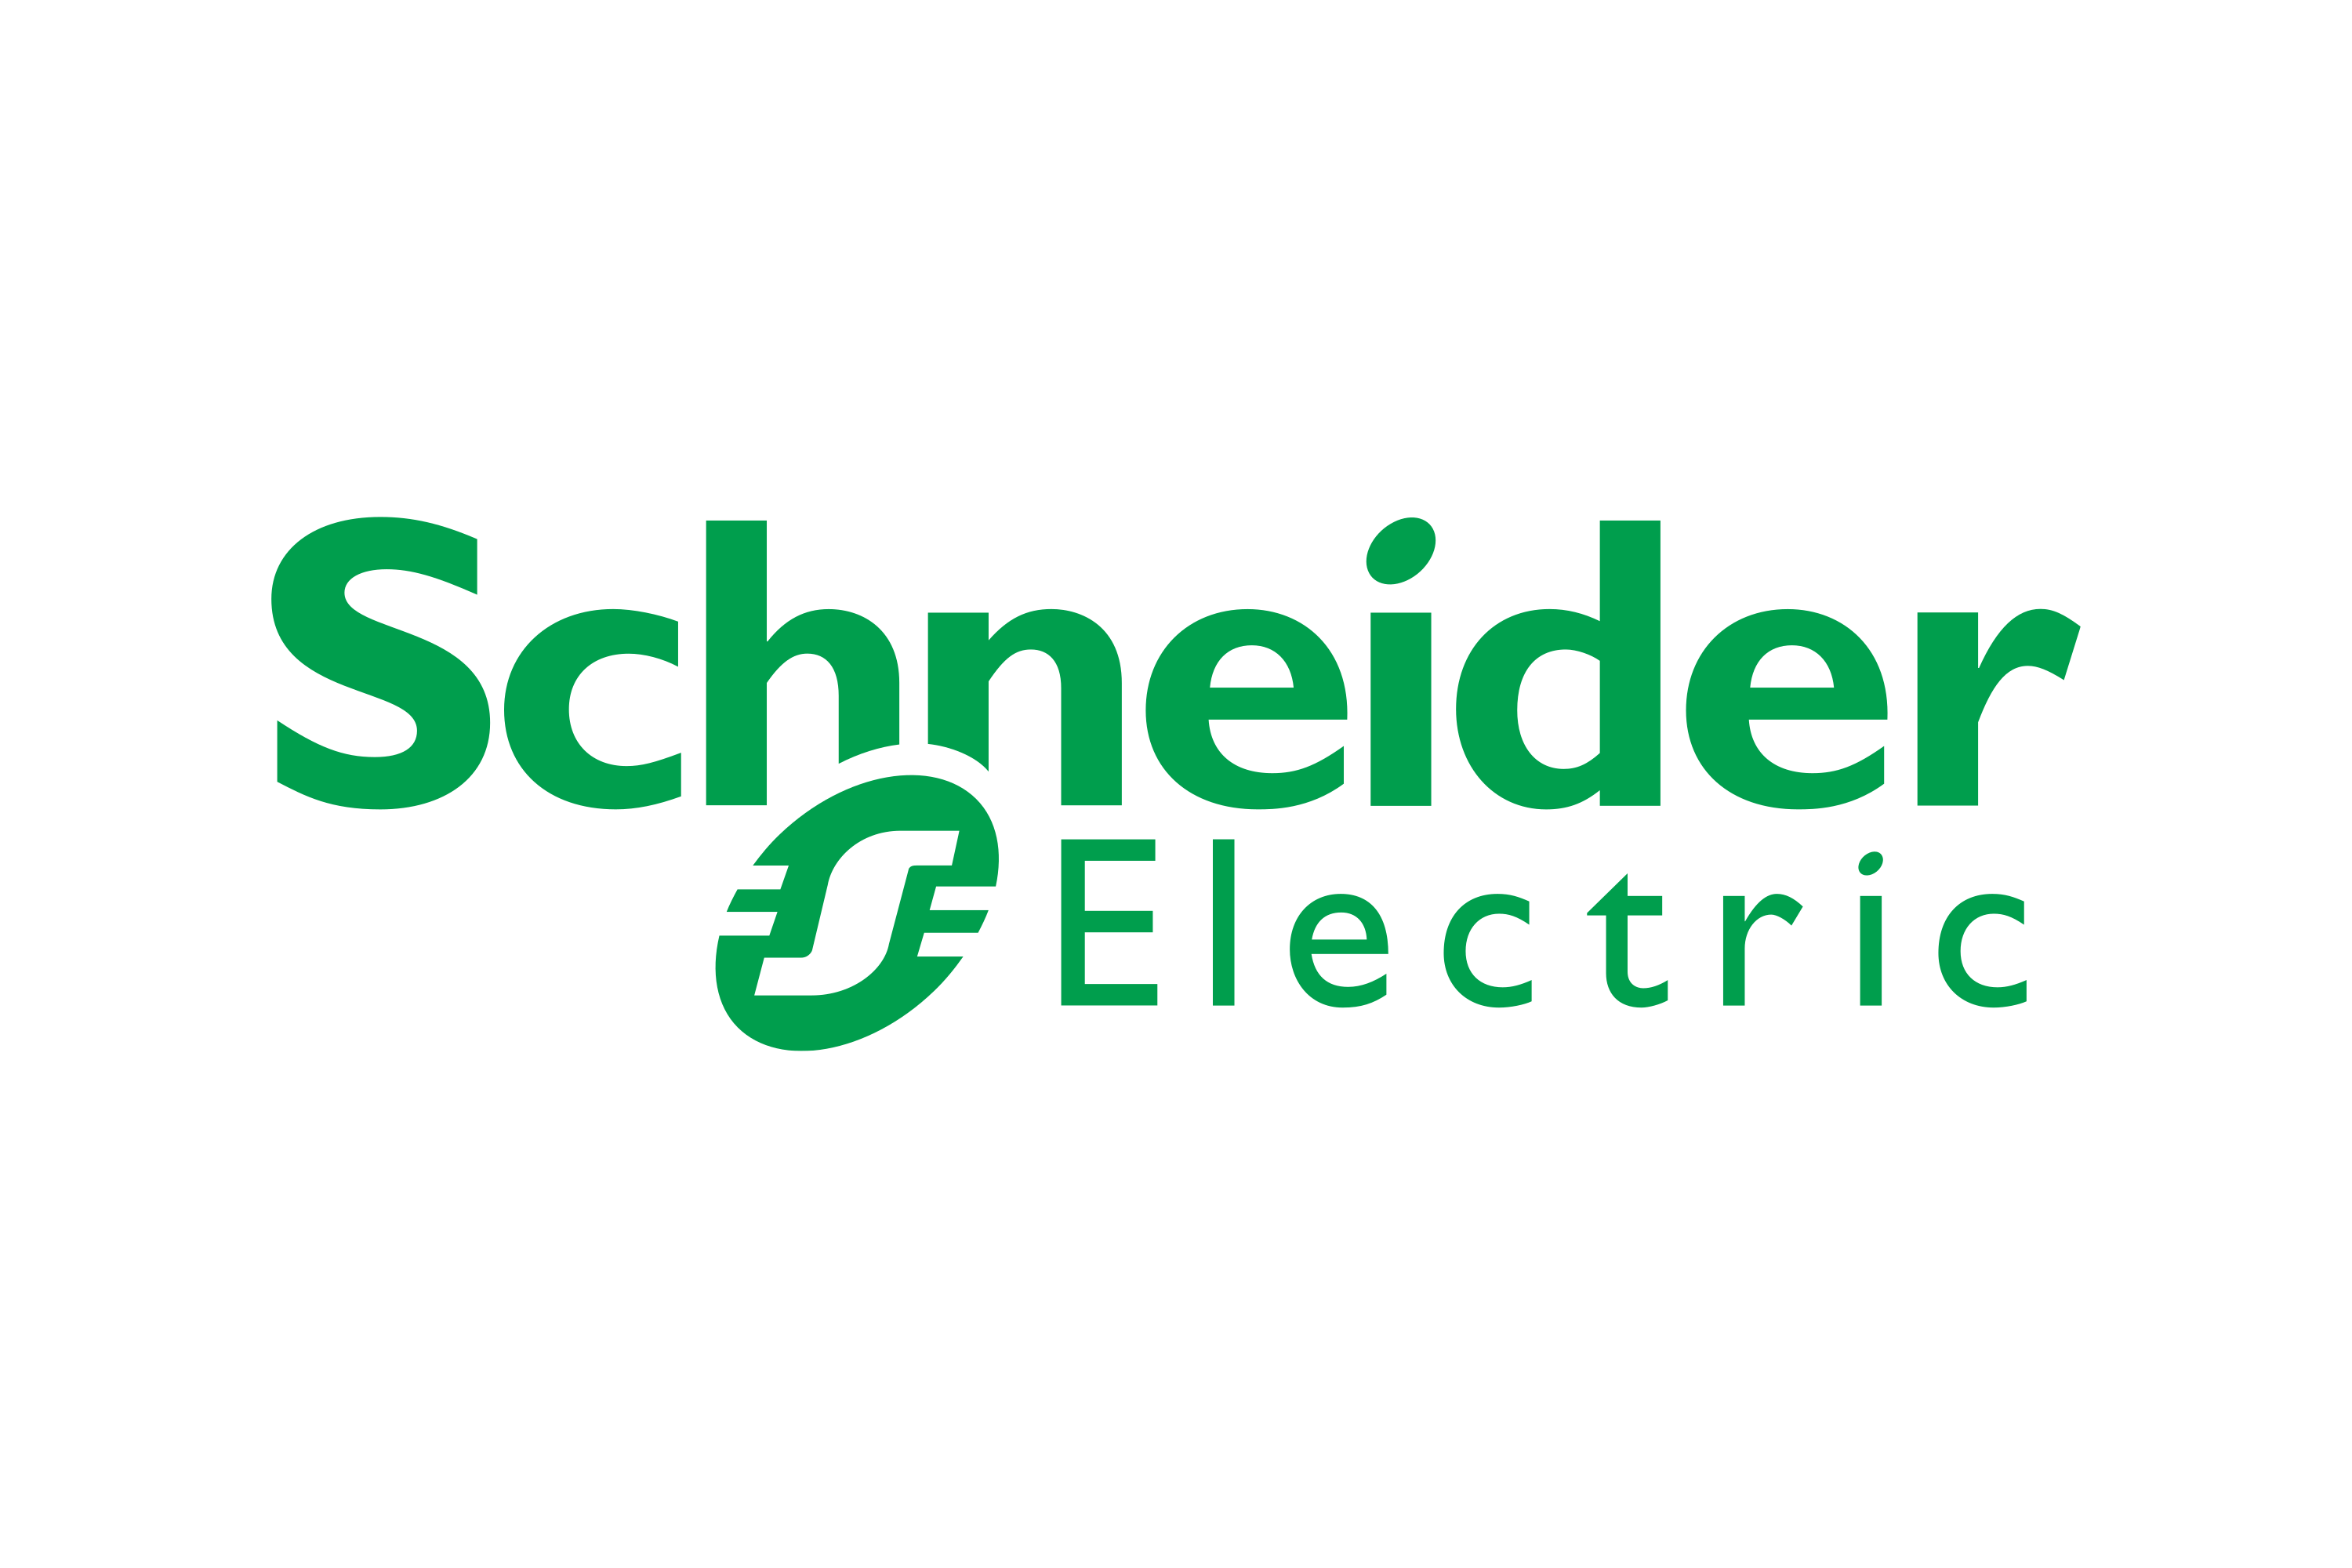 Download Schneider Electric Logo in SVG Vector or PNG File Format